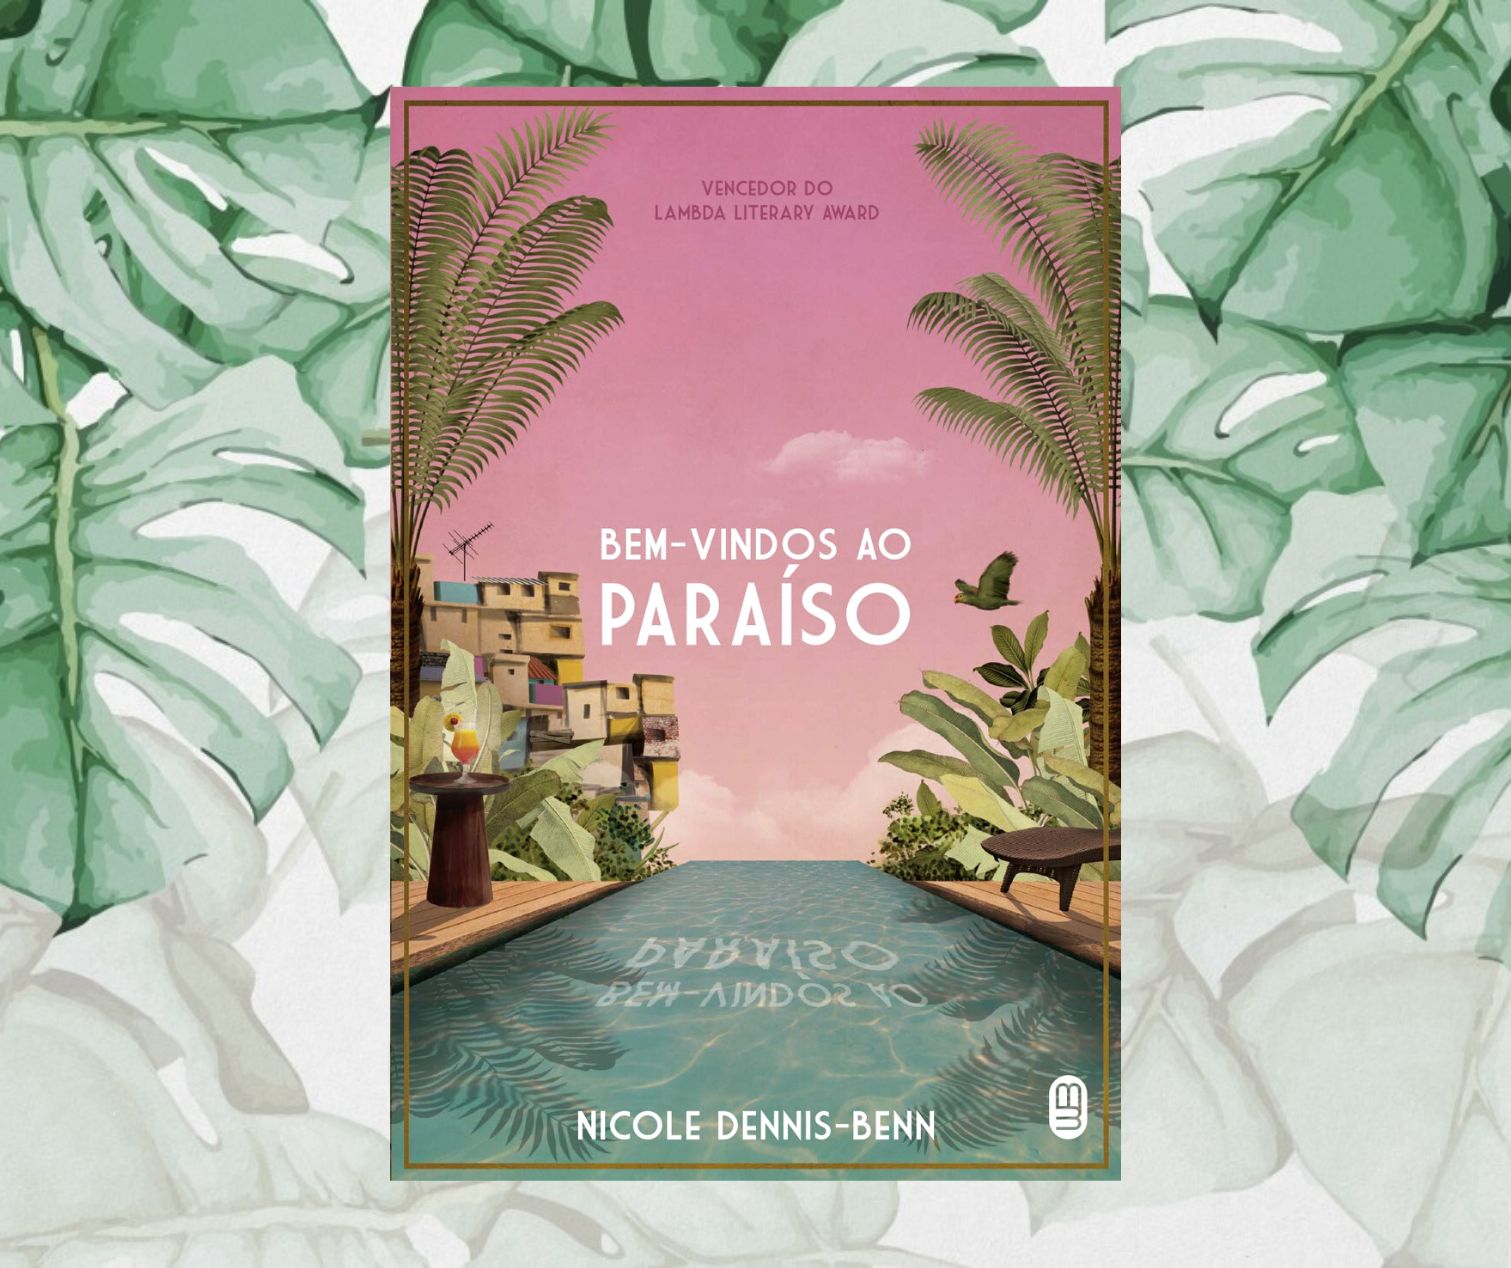 Resenha: Bem-vindos ao paraíso, de Nicole Dennis-Benn